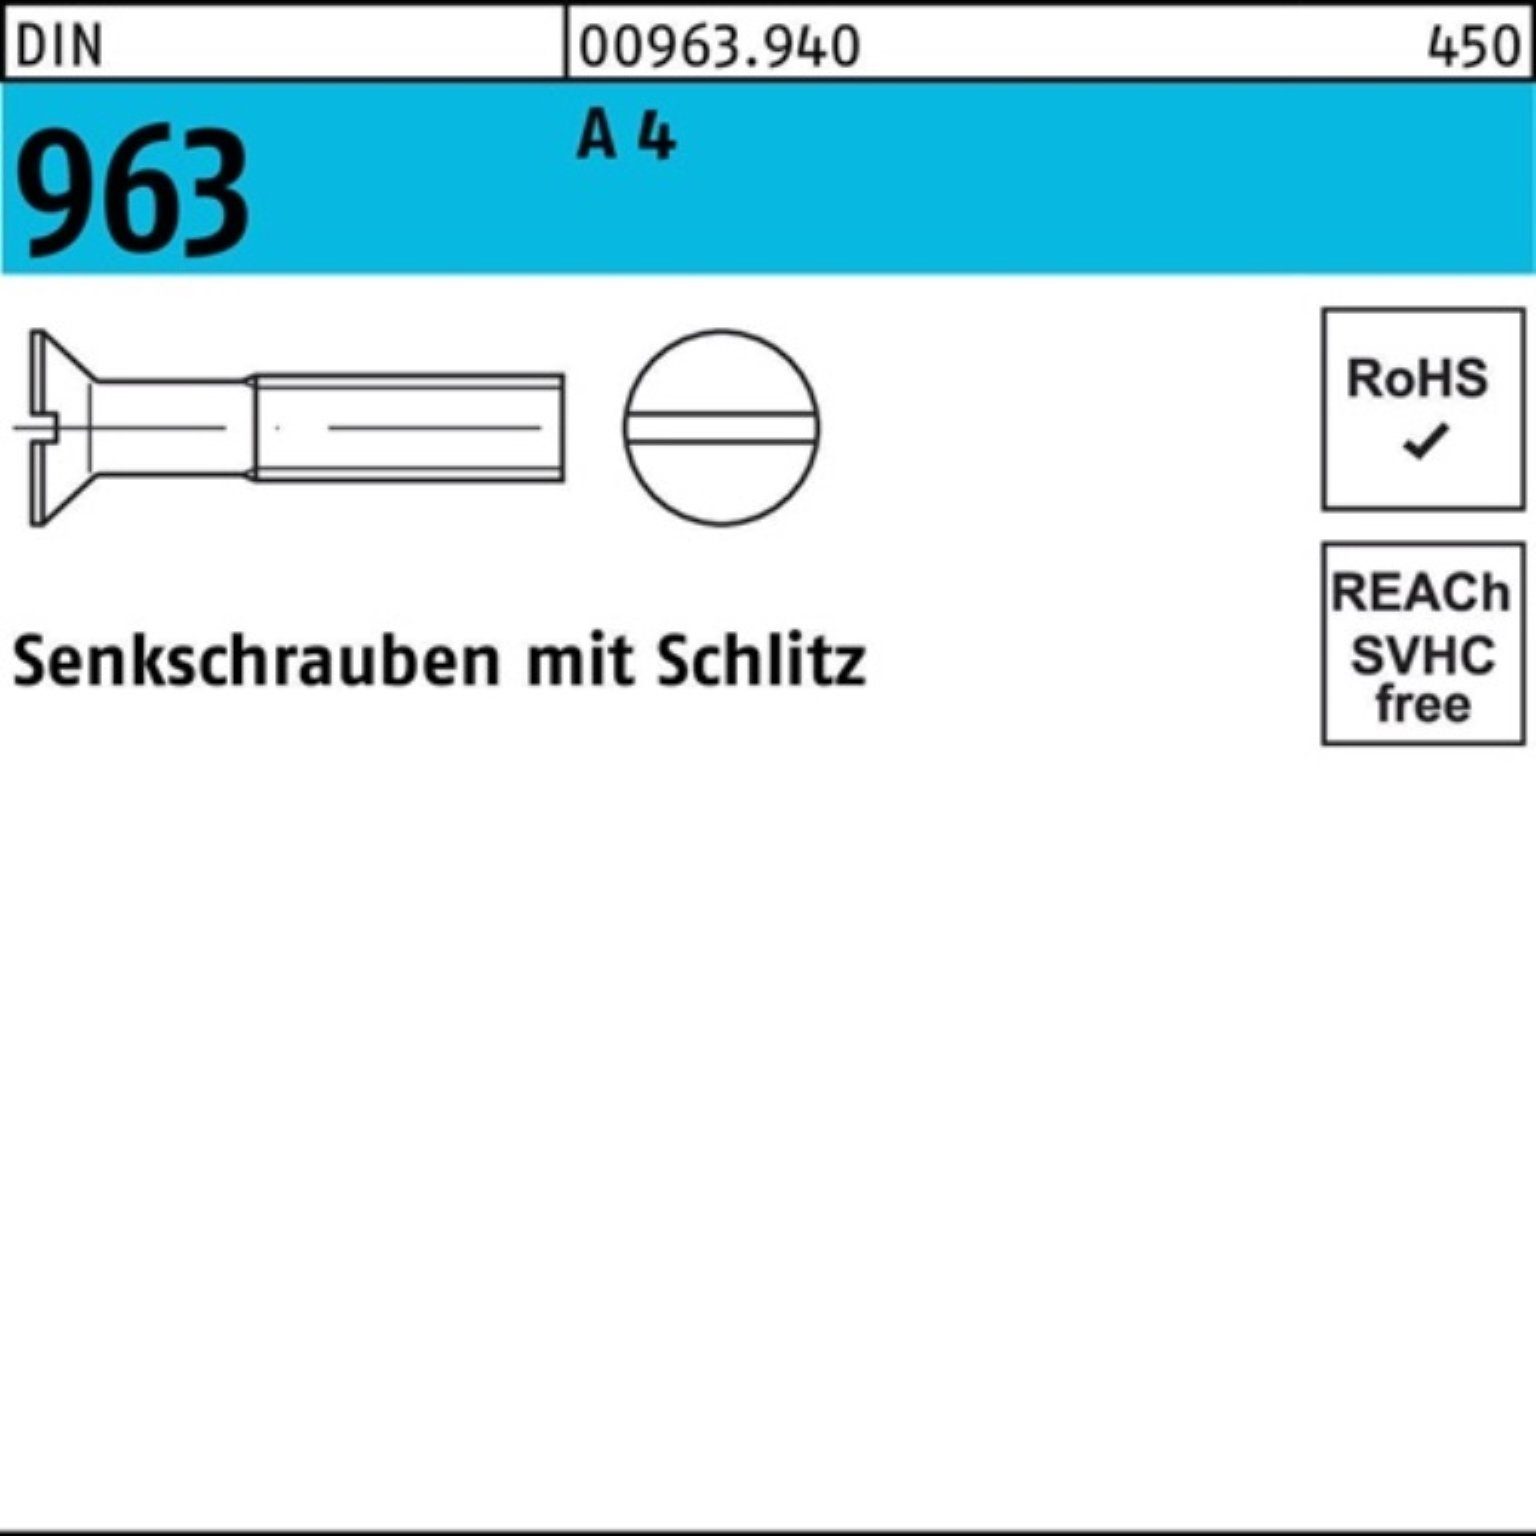 963 M4x Reyher Pack 20 Senkschraube 4 A Schlitz 963 DIN 200 200er DIN Stück Senkschraube